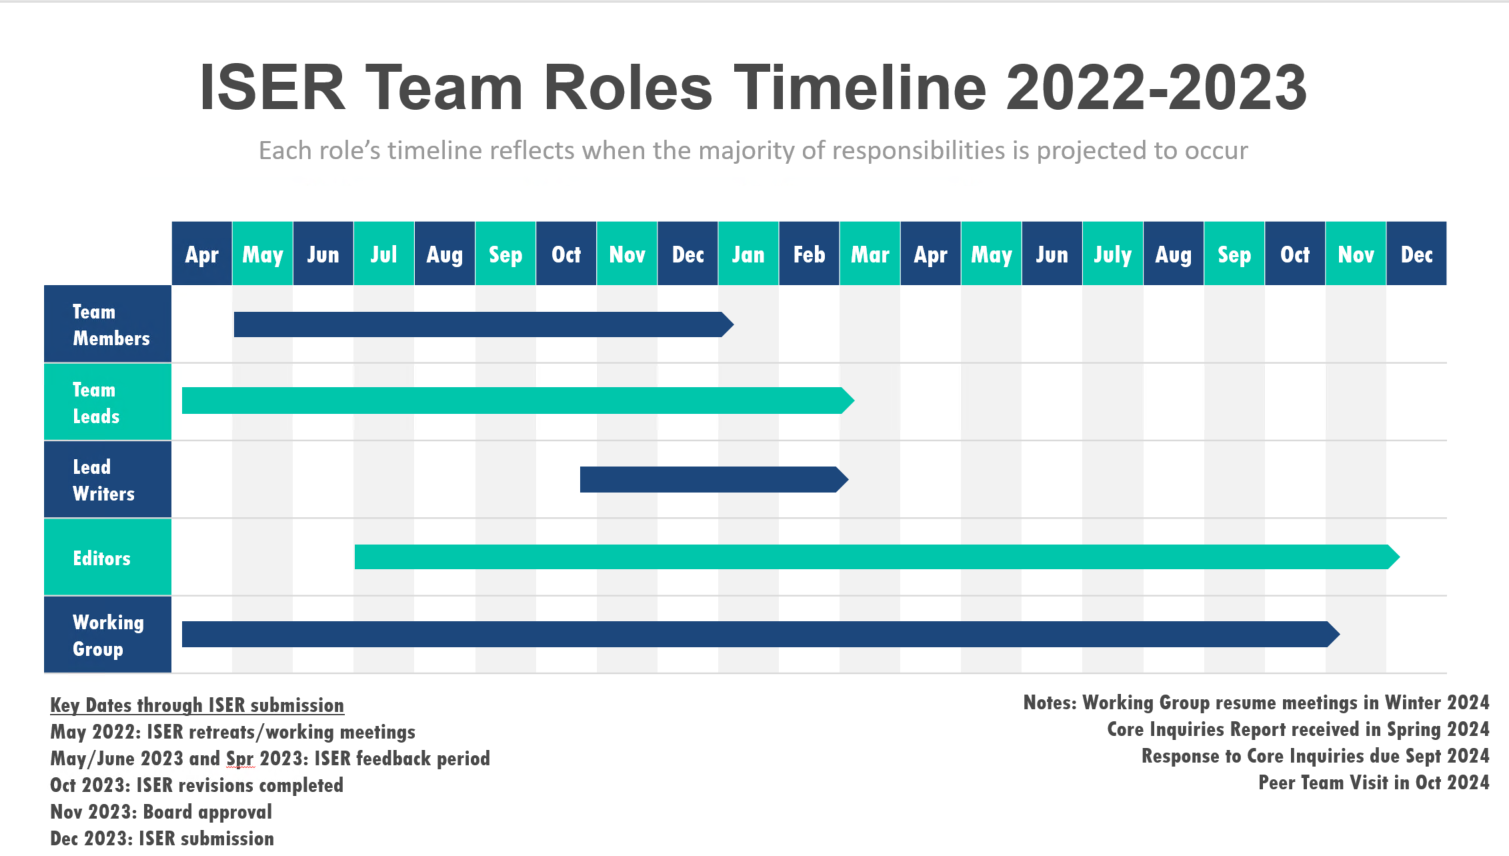 ISER Process Timeline April 2022-December 2023